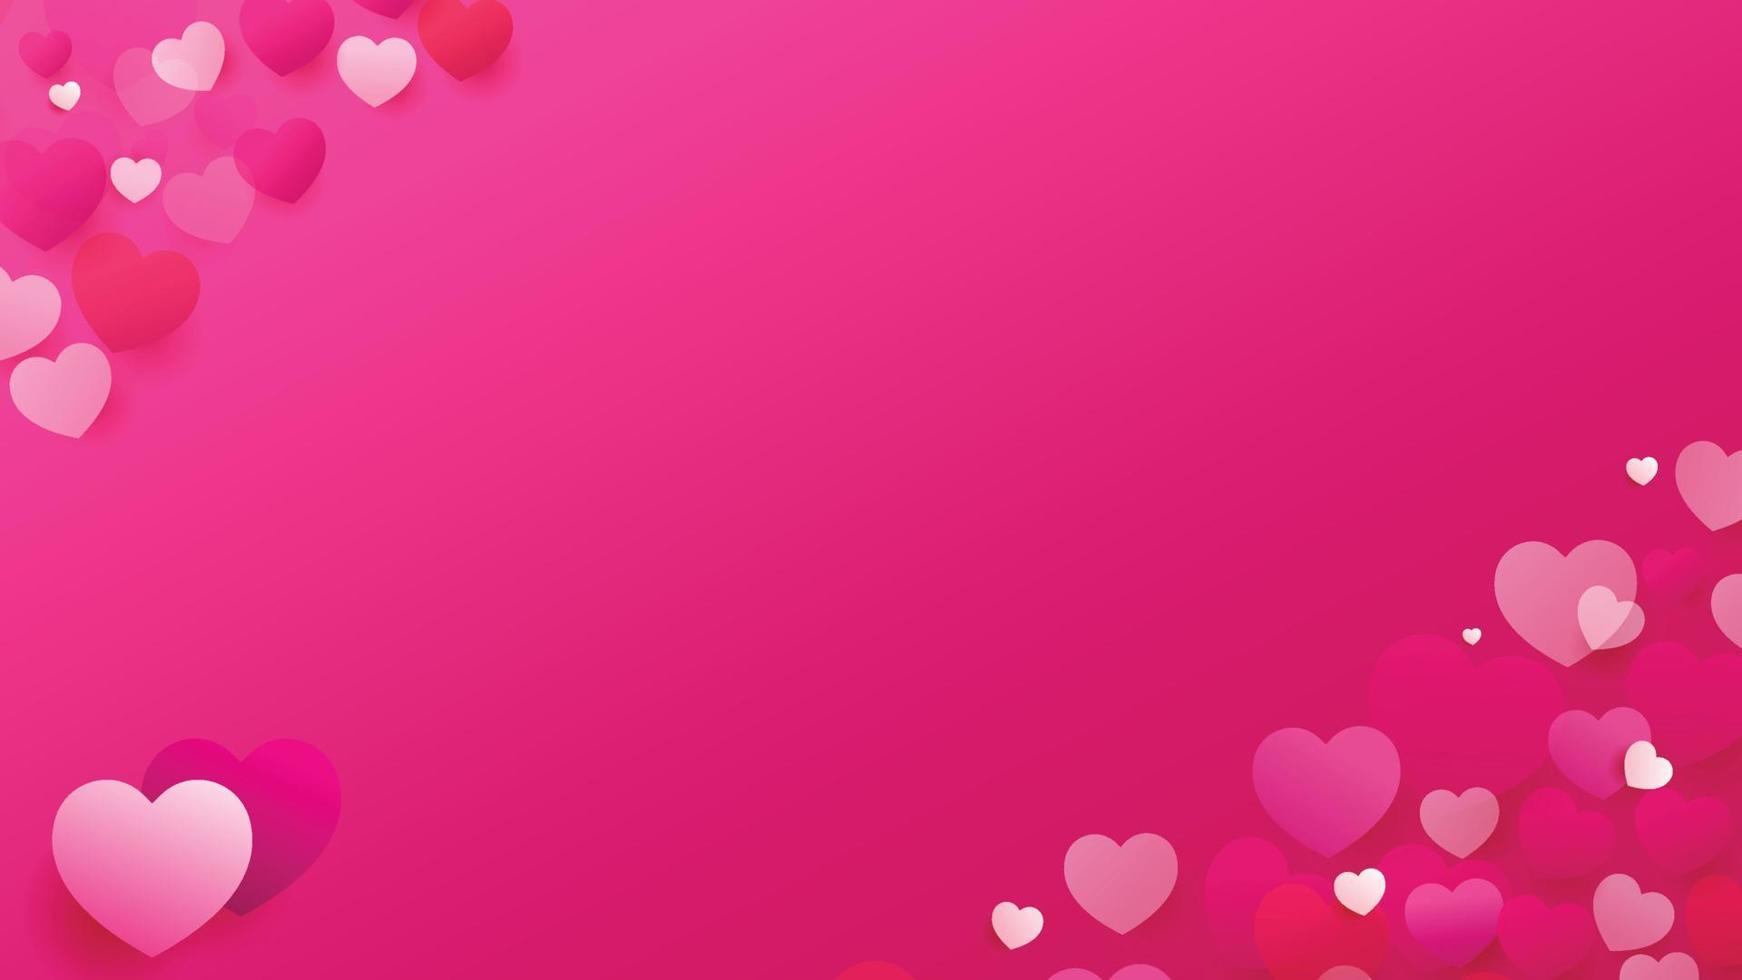 fondo de vector de amor de corazón. marco de San Valentín. fondo de corazones de color rosa. Ilustración de diseño de fondo de amor. fondo de San Valentín. amor corazon. fondo dulce